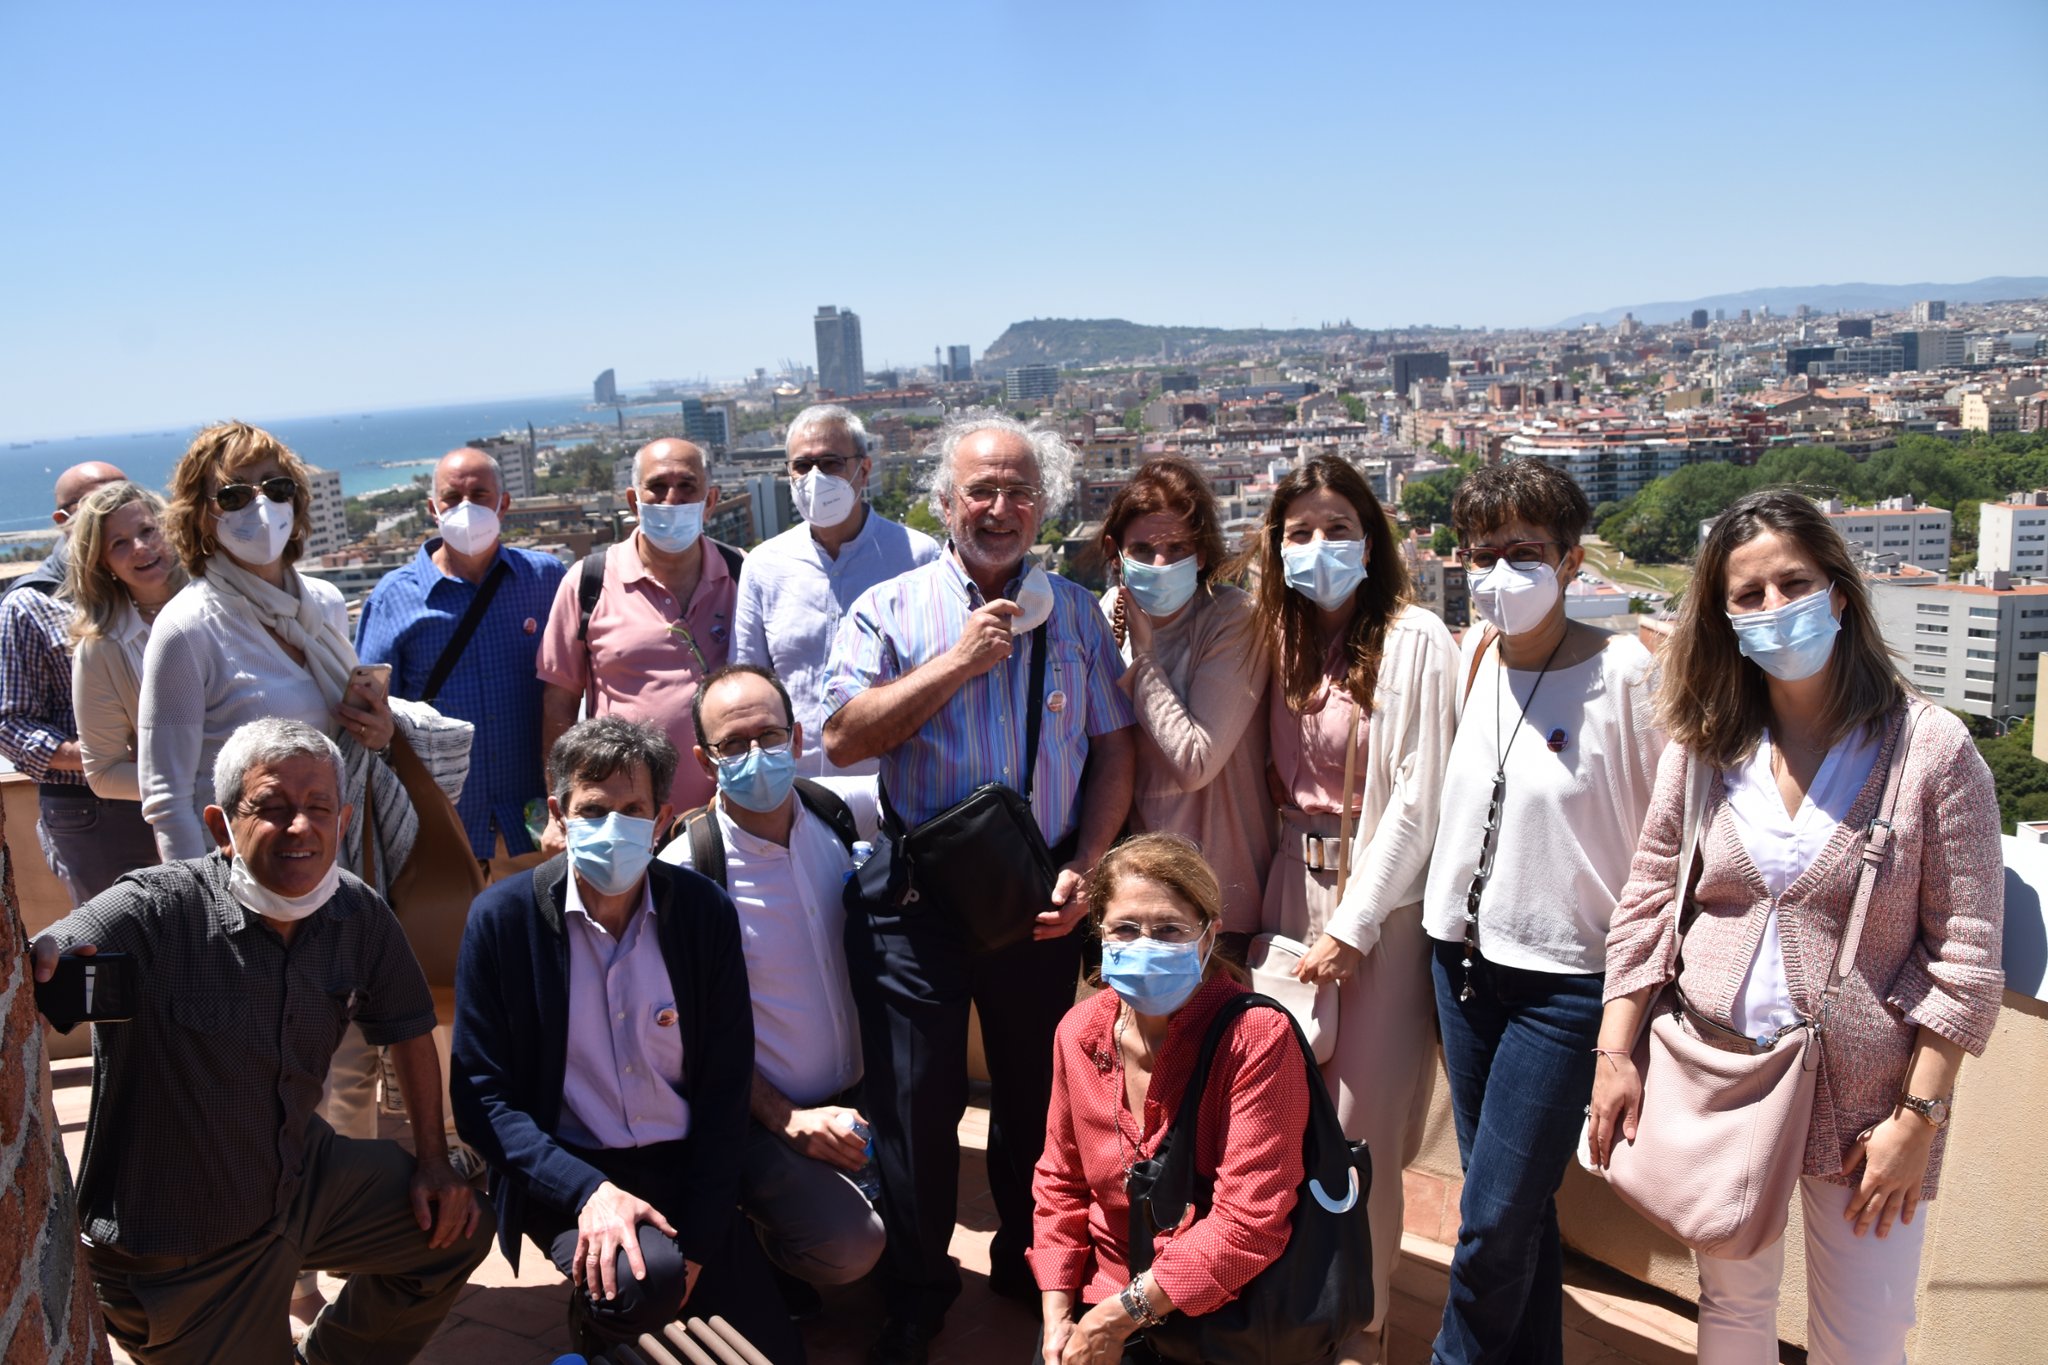 El amianto a debate: evento organizado por el colectivo de jubilados de Macosa-Alstom afectados por el amianto